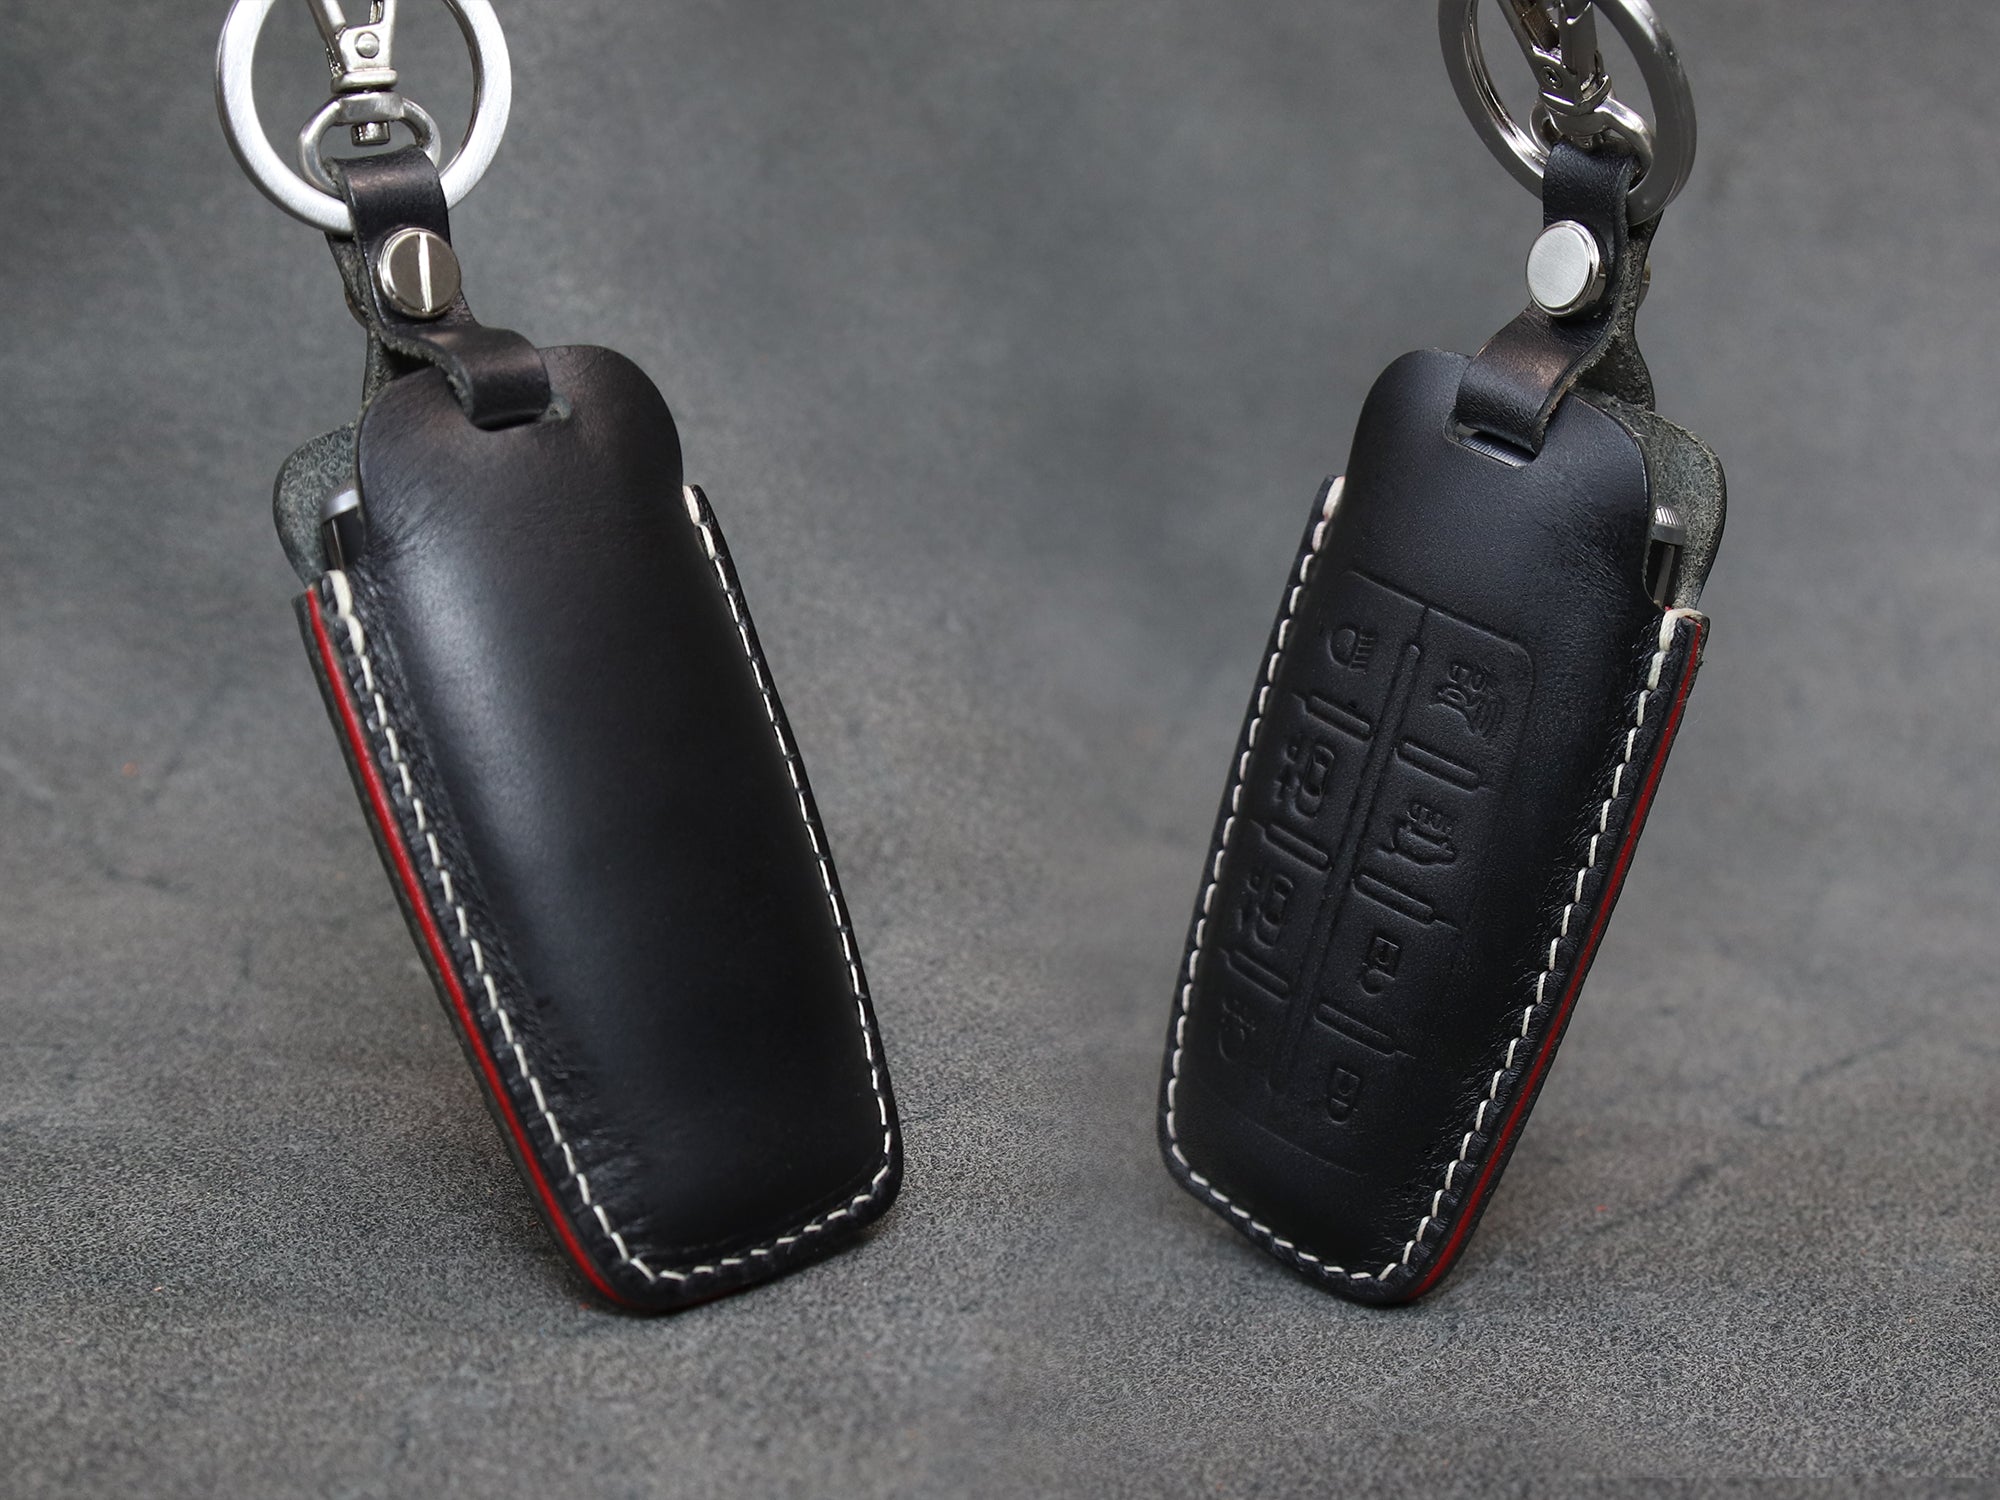 Cheap Holder Car Key Case Key Fob Cover for Hyundai Genesis GV70